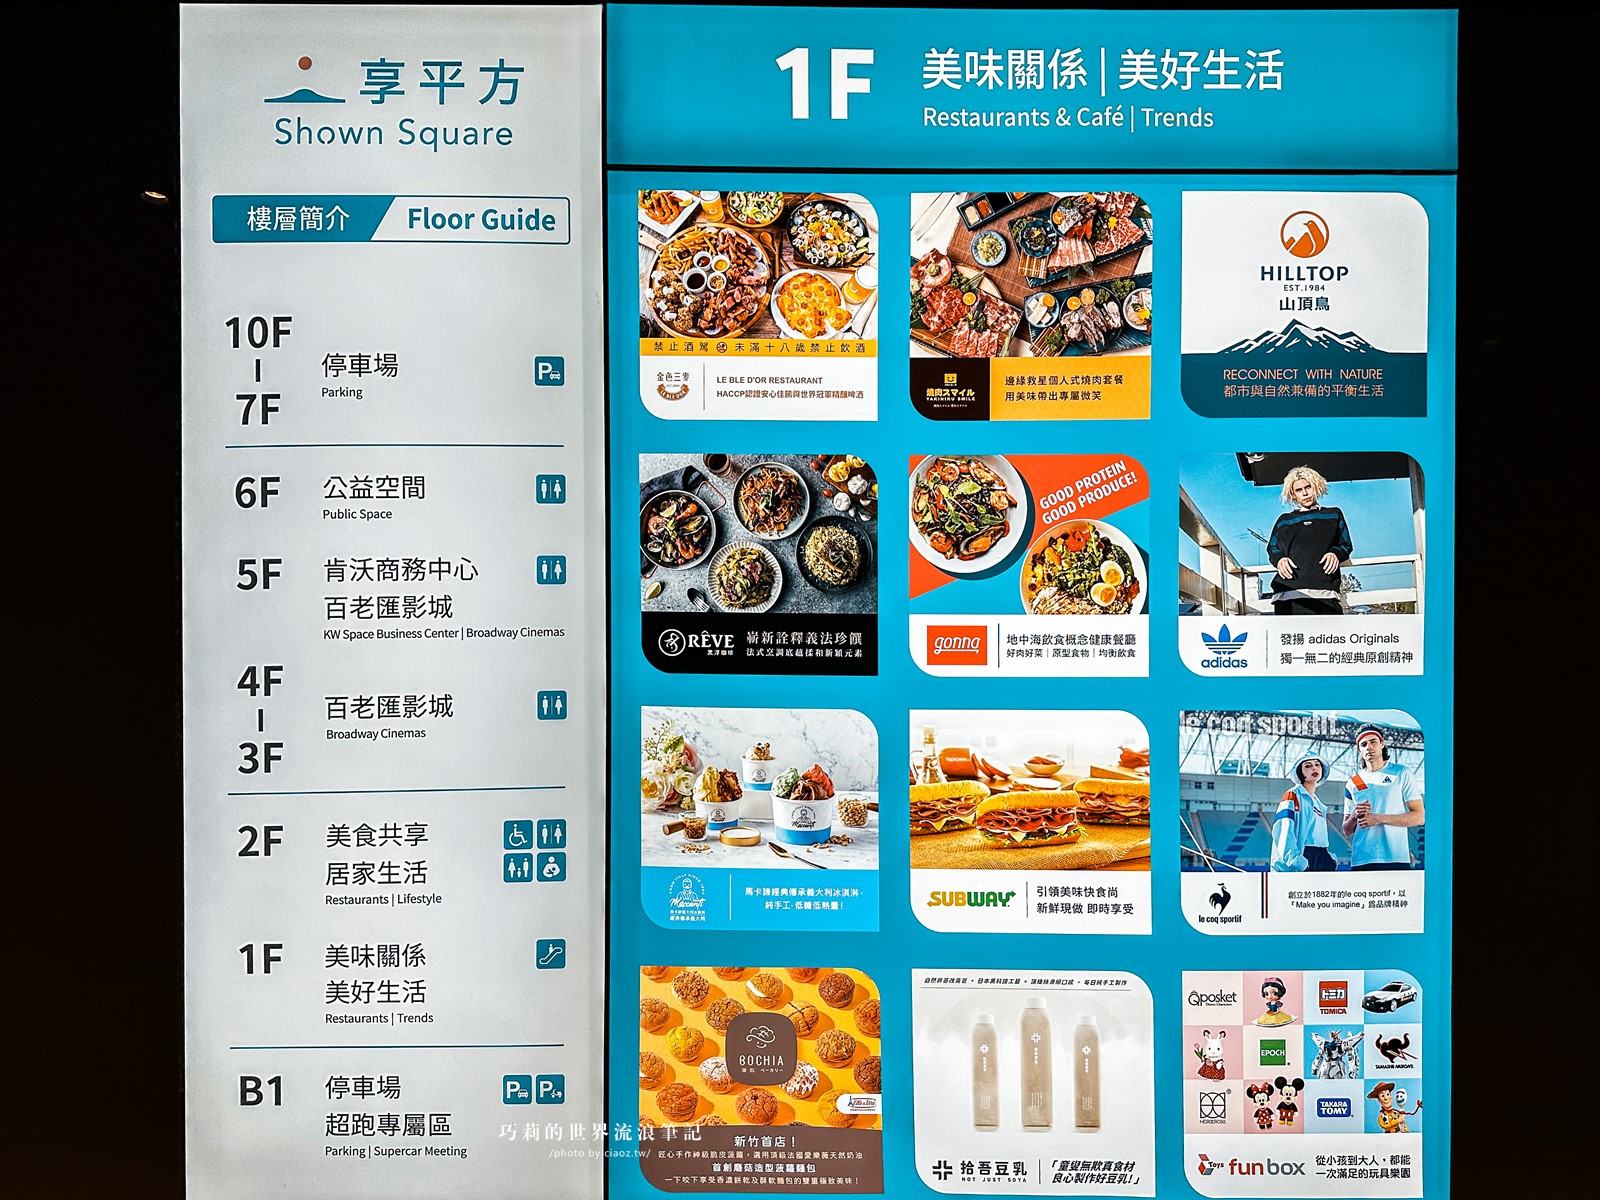 台中美食 | 江家餛飩 | 最愛鮮蝦餛飩超大顆 向上市場銅板美食推薦 @巧莉的世界流浪筆記